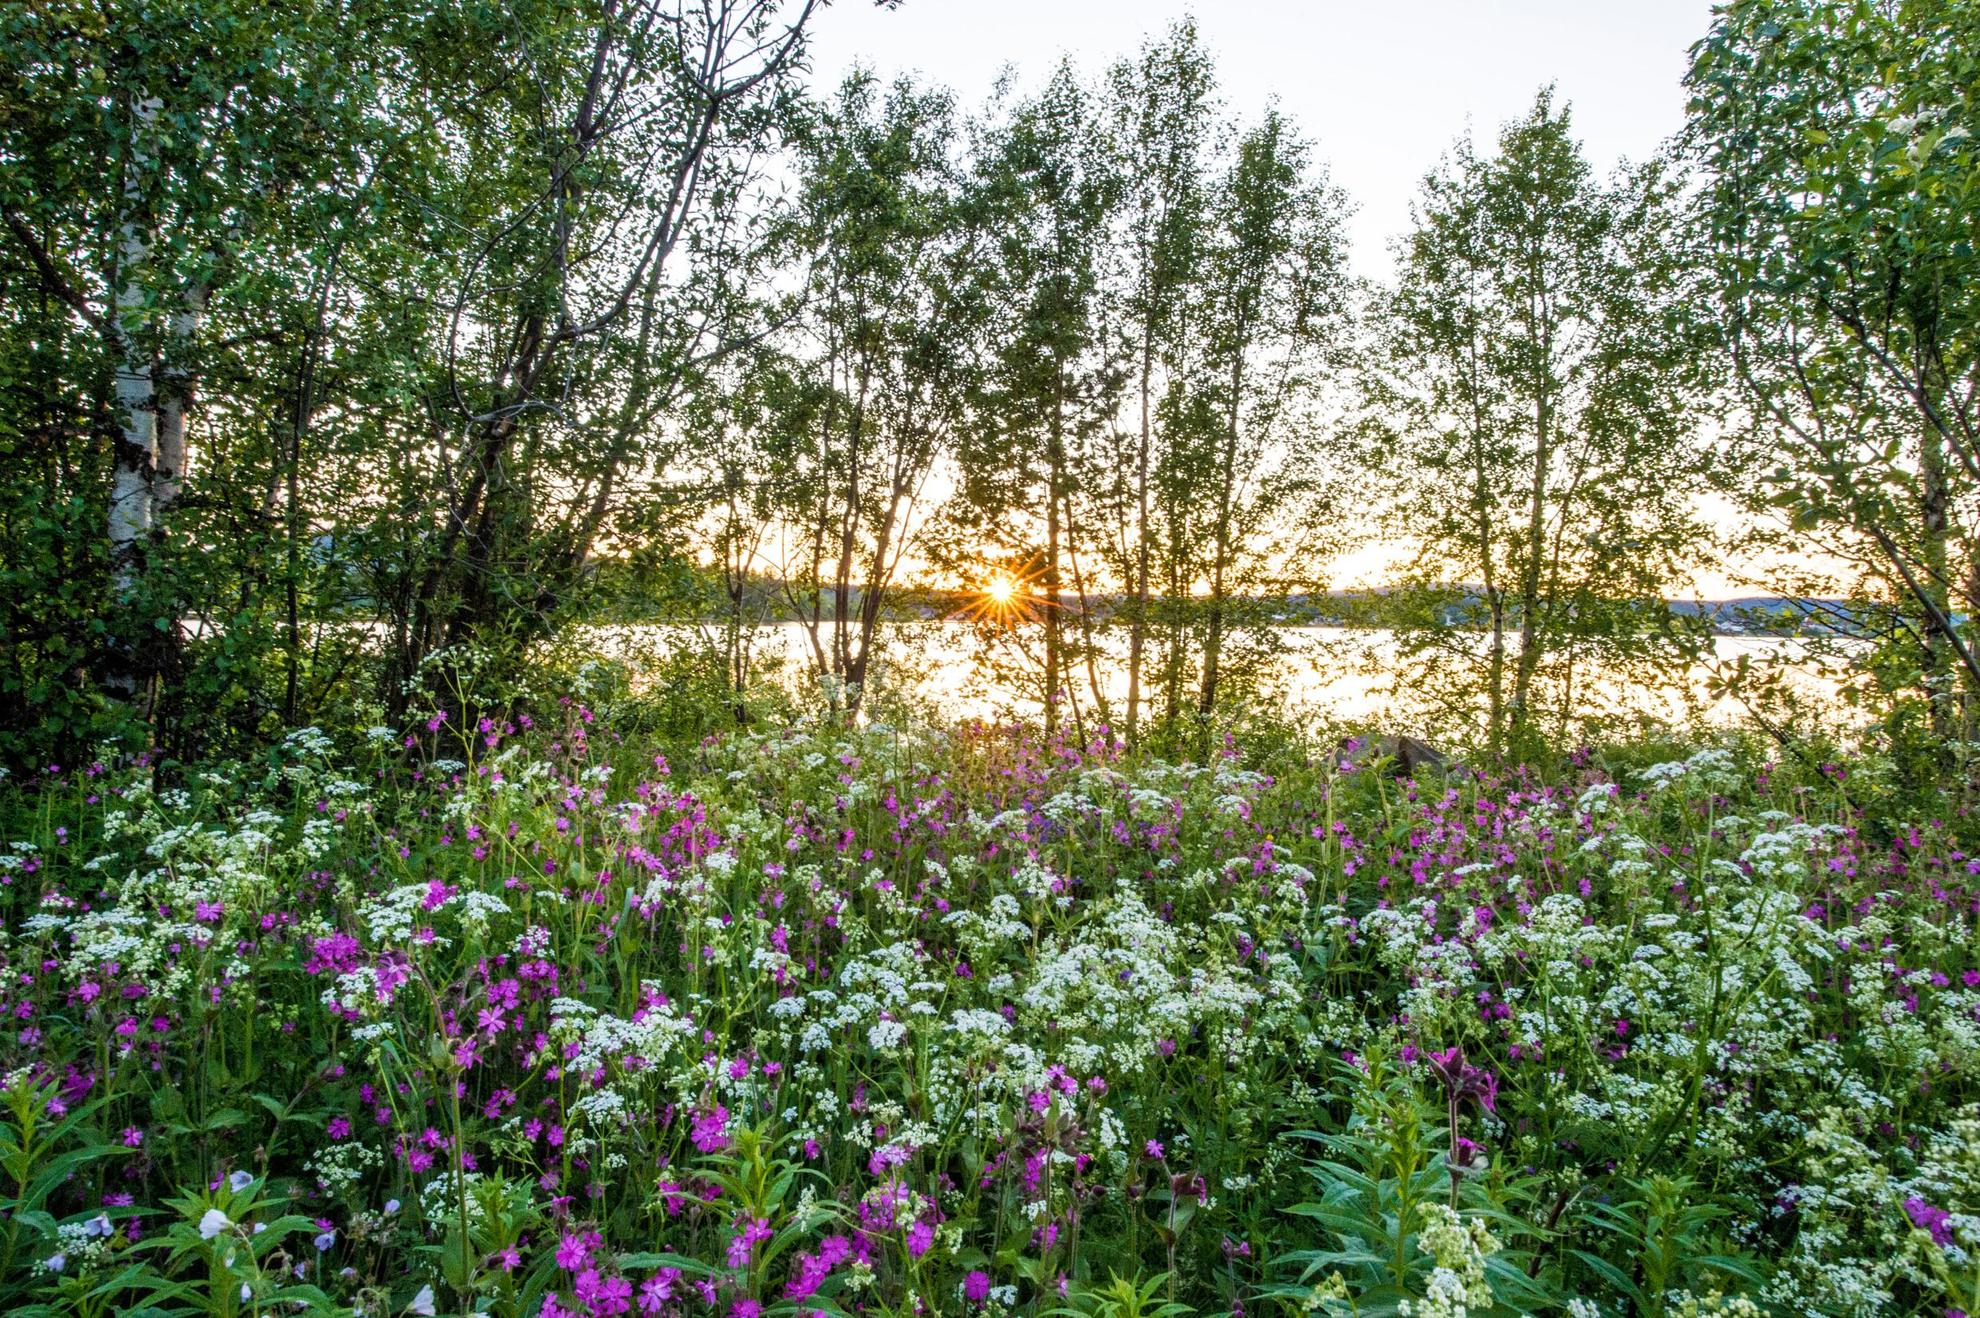 Blick auf die Natur mit wilden Blumen, Bäumen und einem See im Hintergrund.